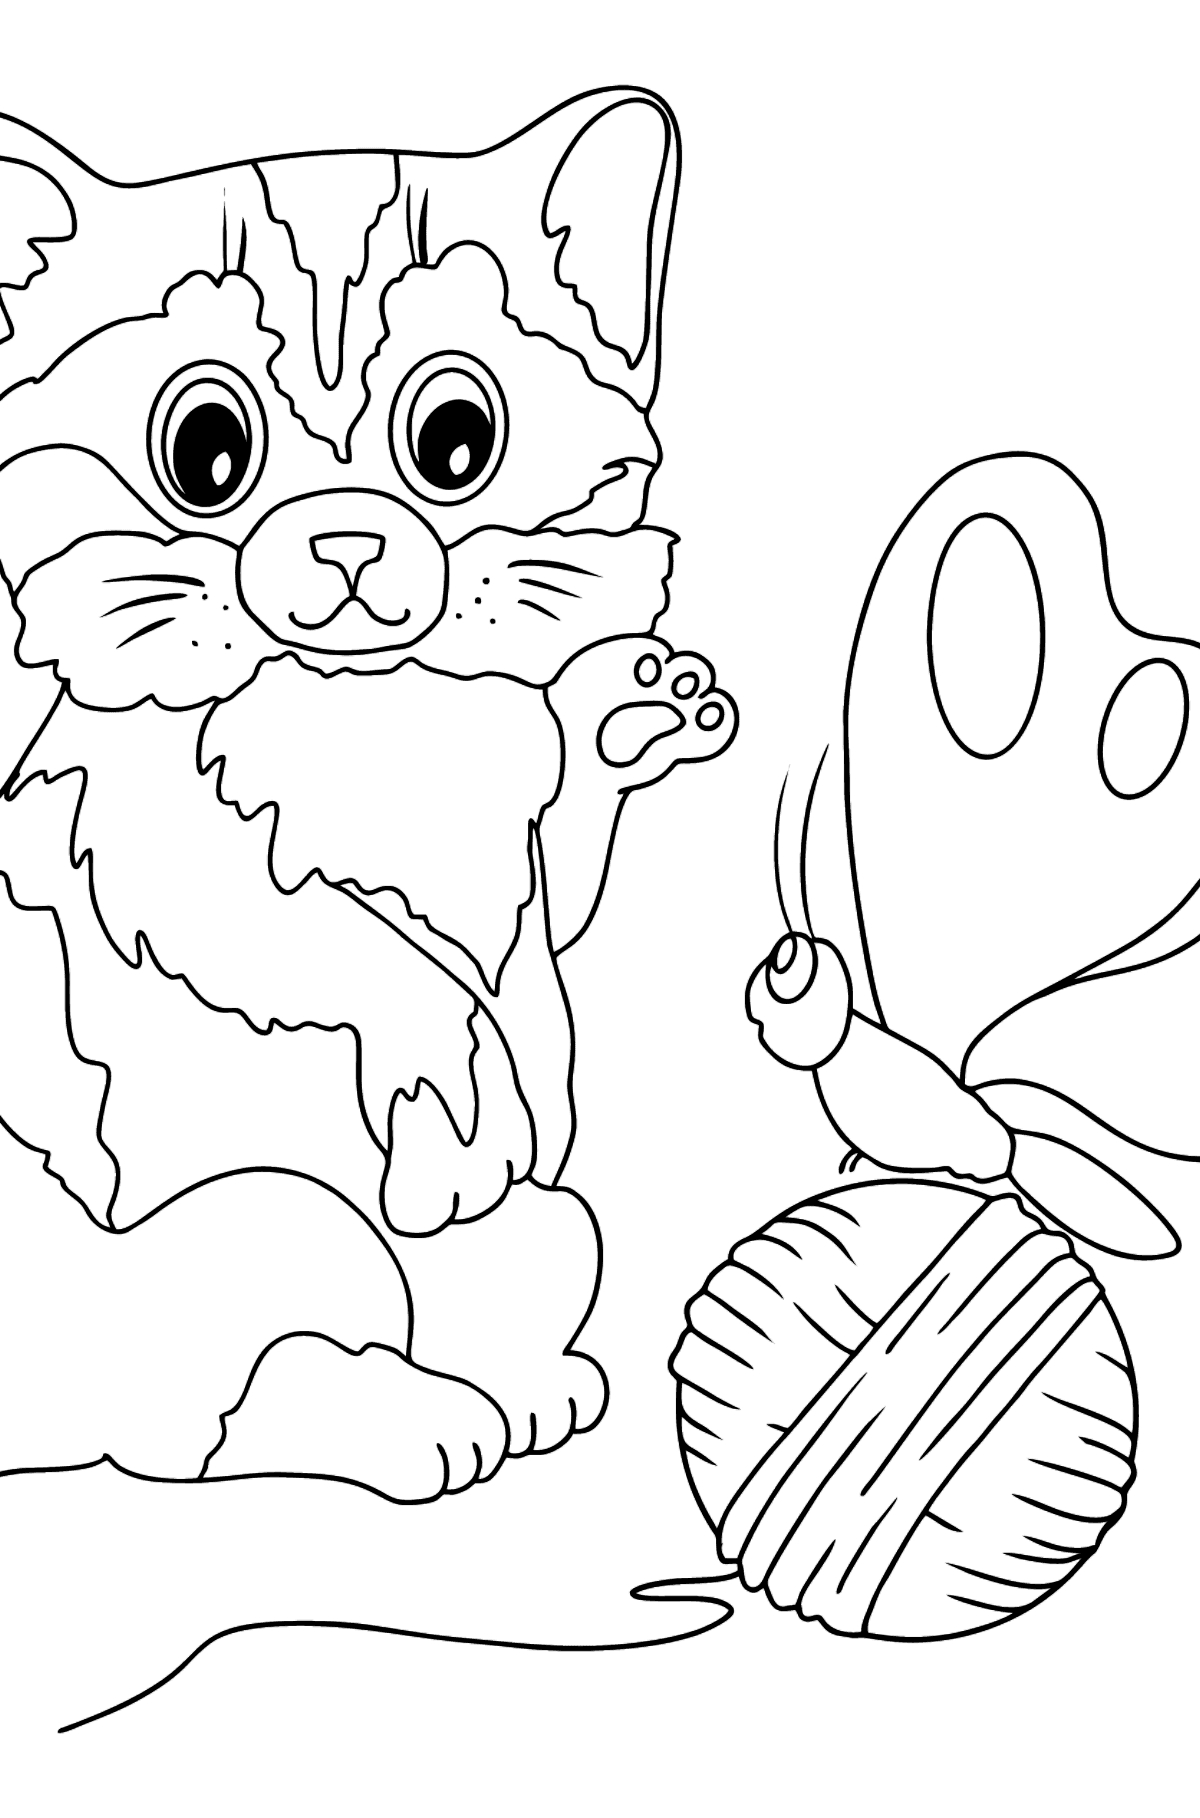 61 Baby Katze Ausmalbild - Malvorlagen Für Kinder Zum mit Katzenbaby Ausmalbilder